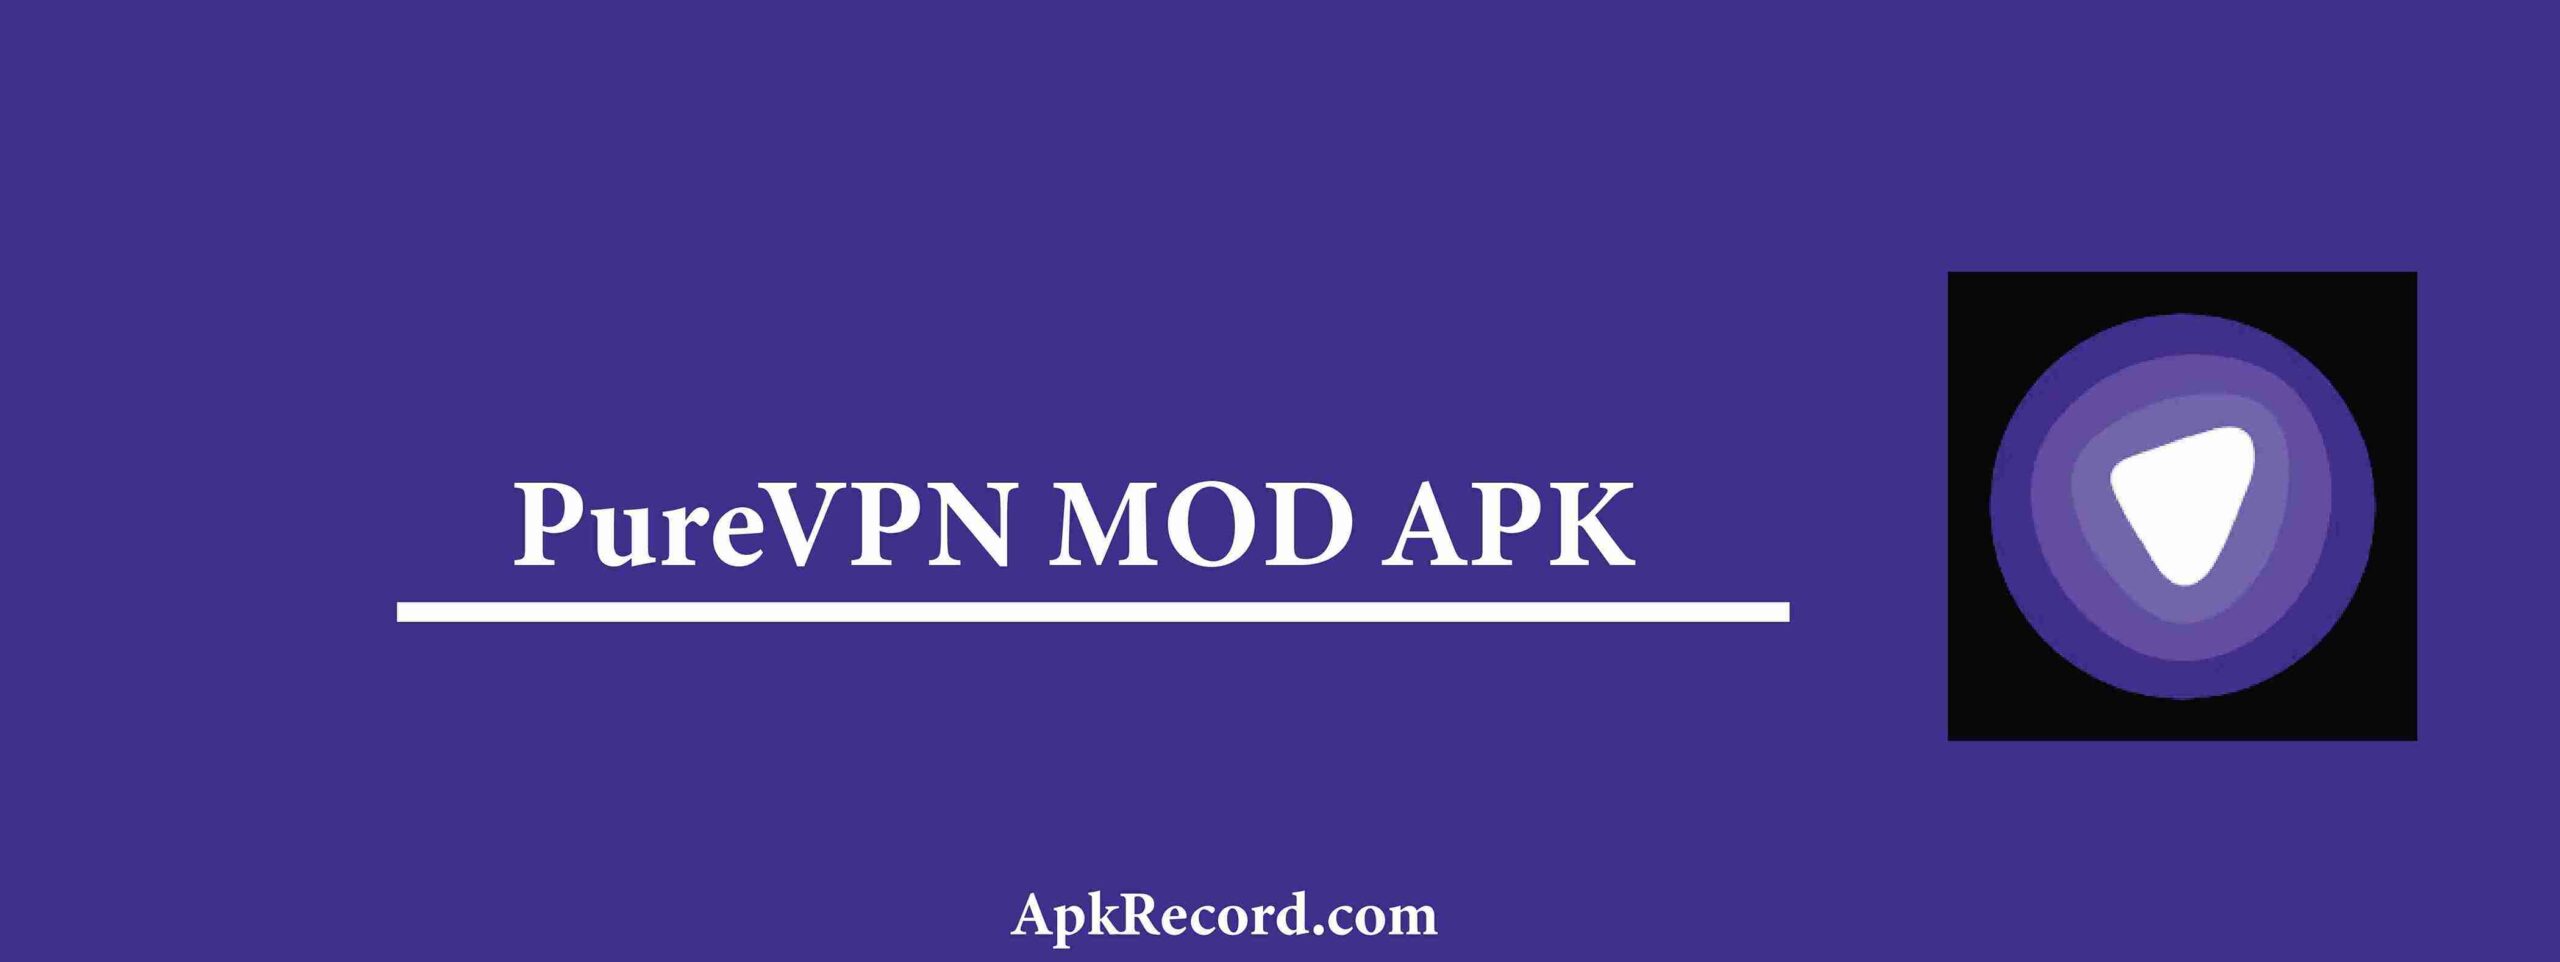 PureVPN MOD APK V8.59.53